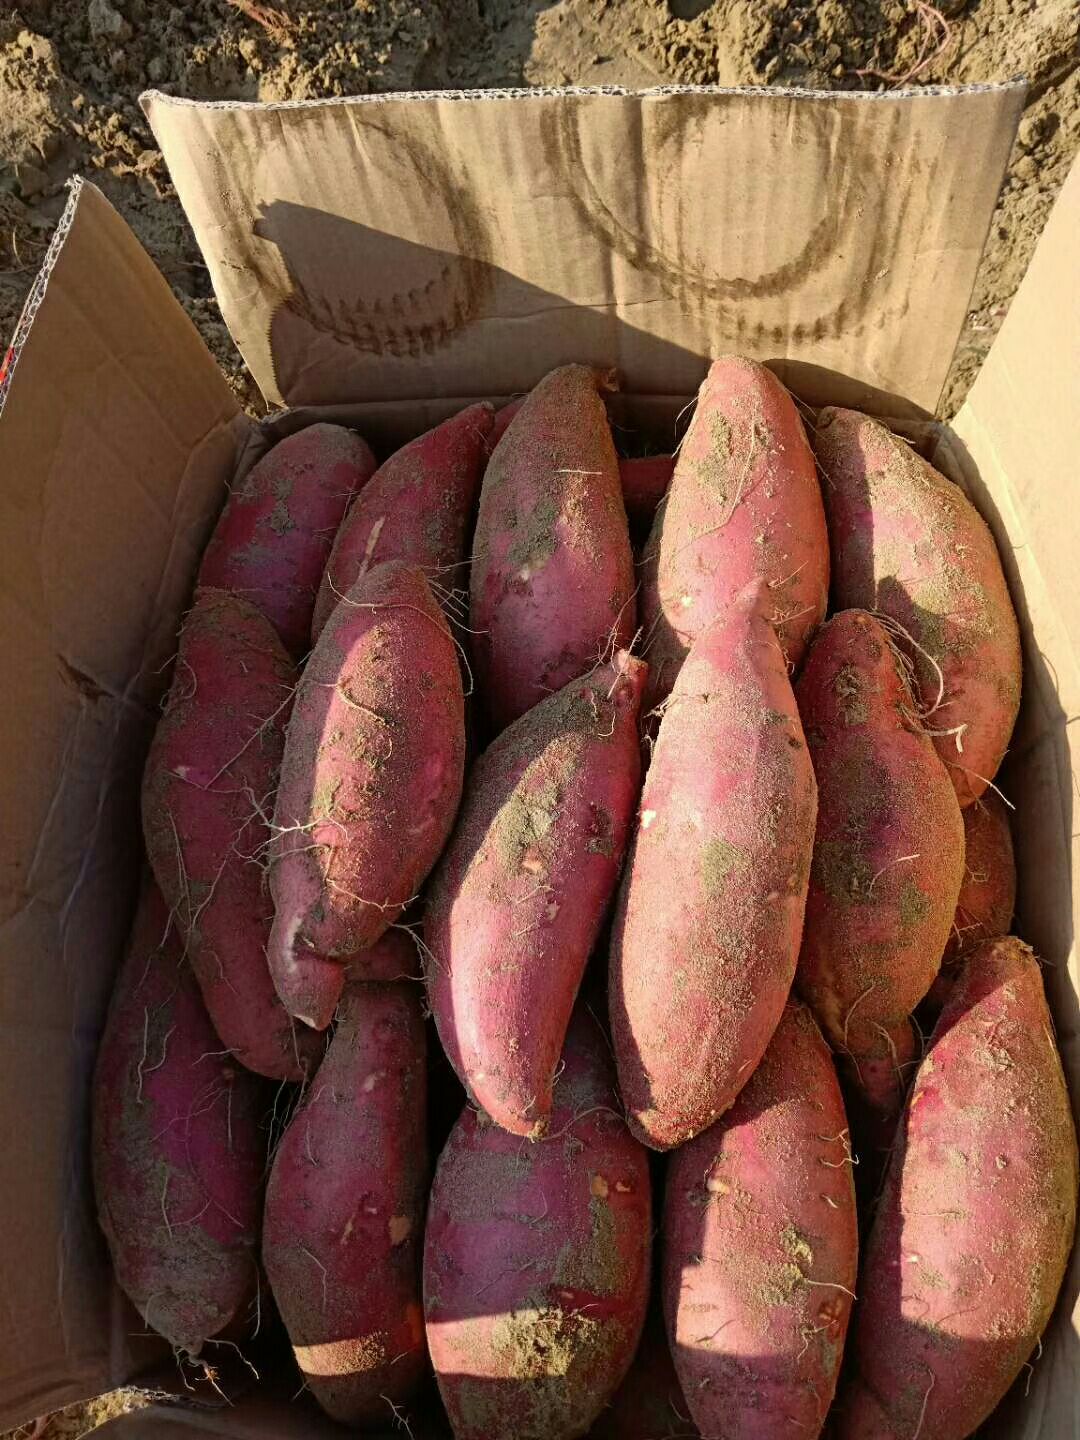 西瓜红红薯市场价图片